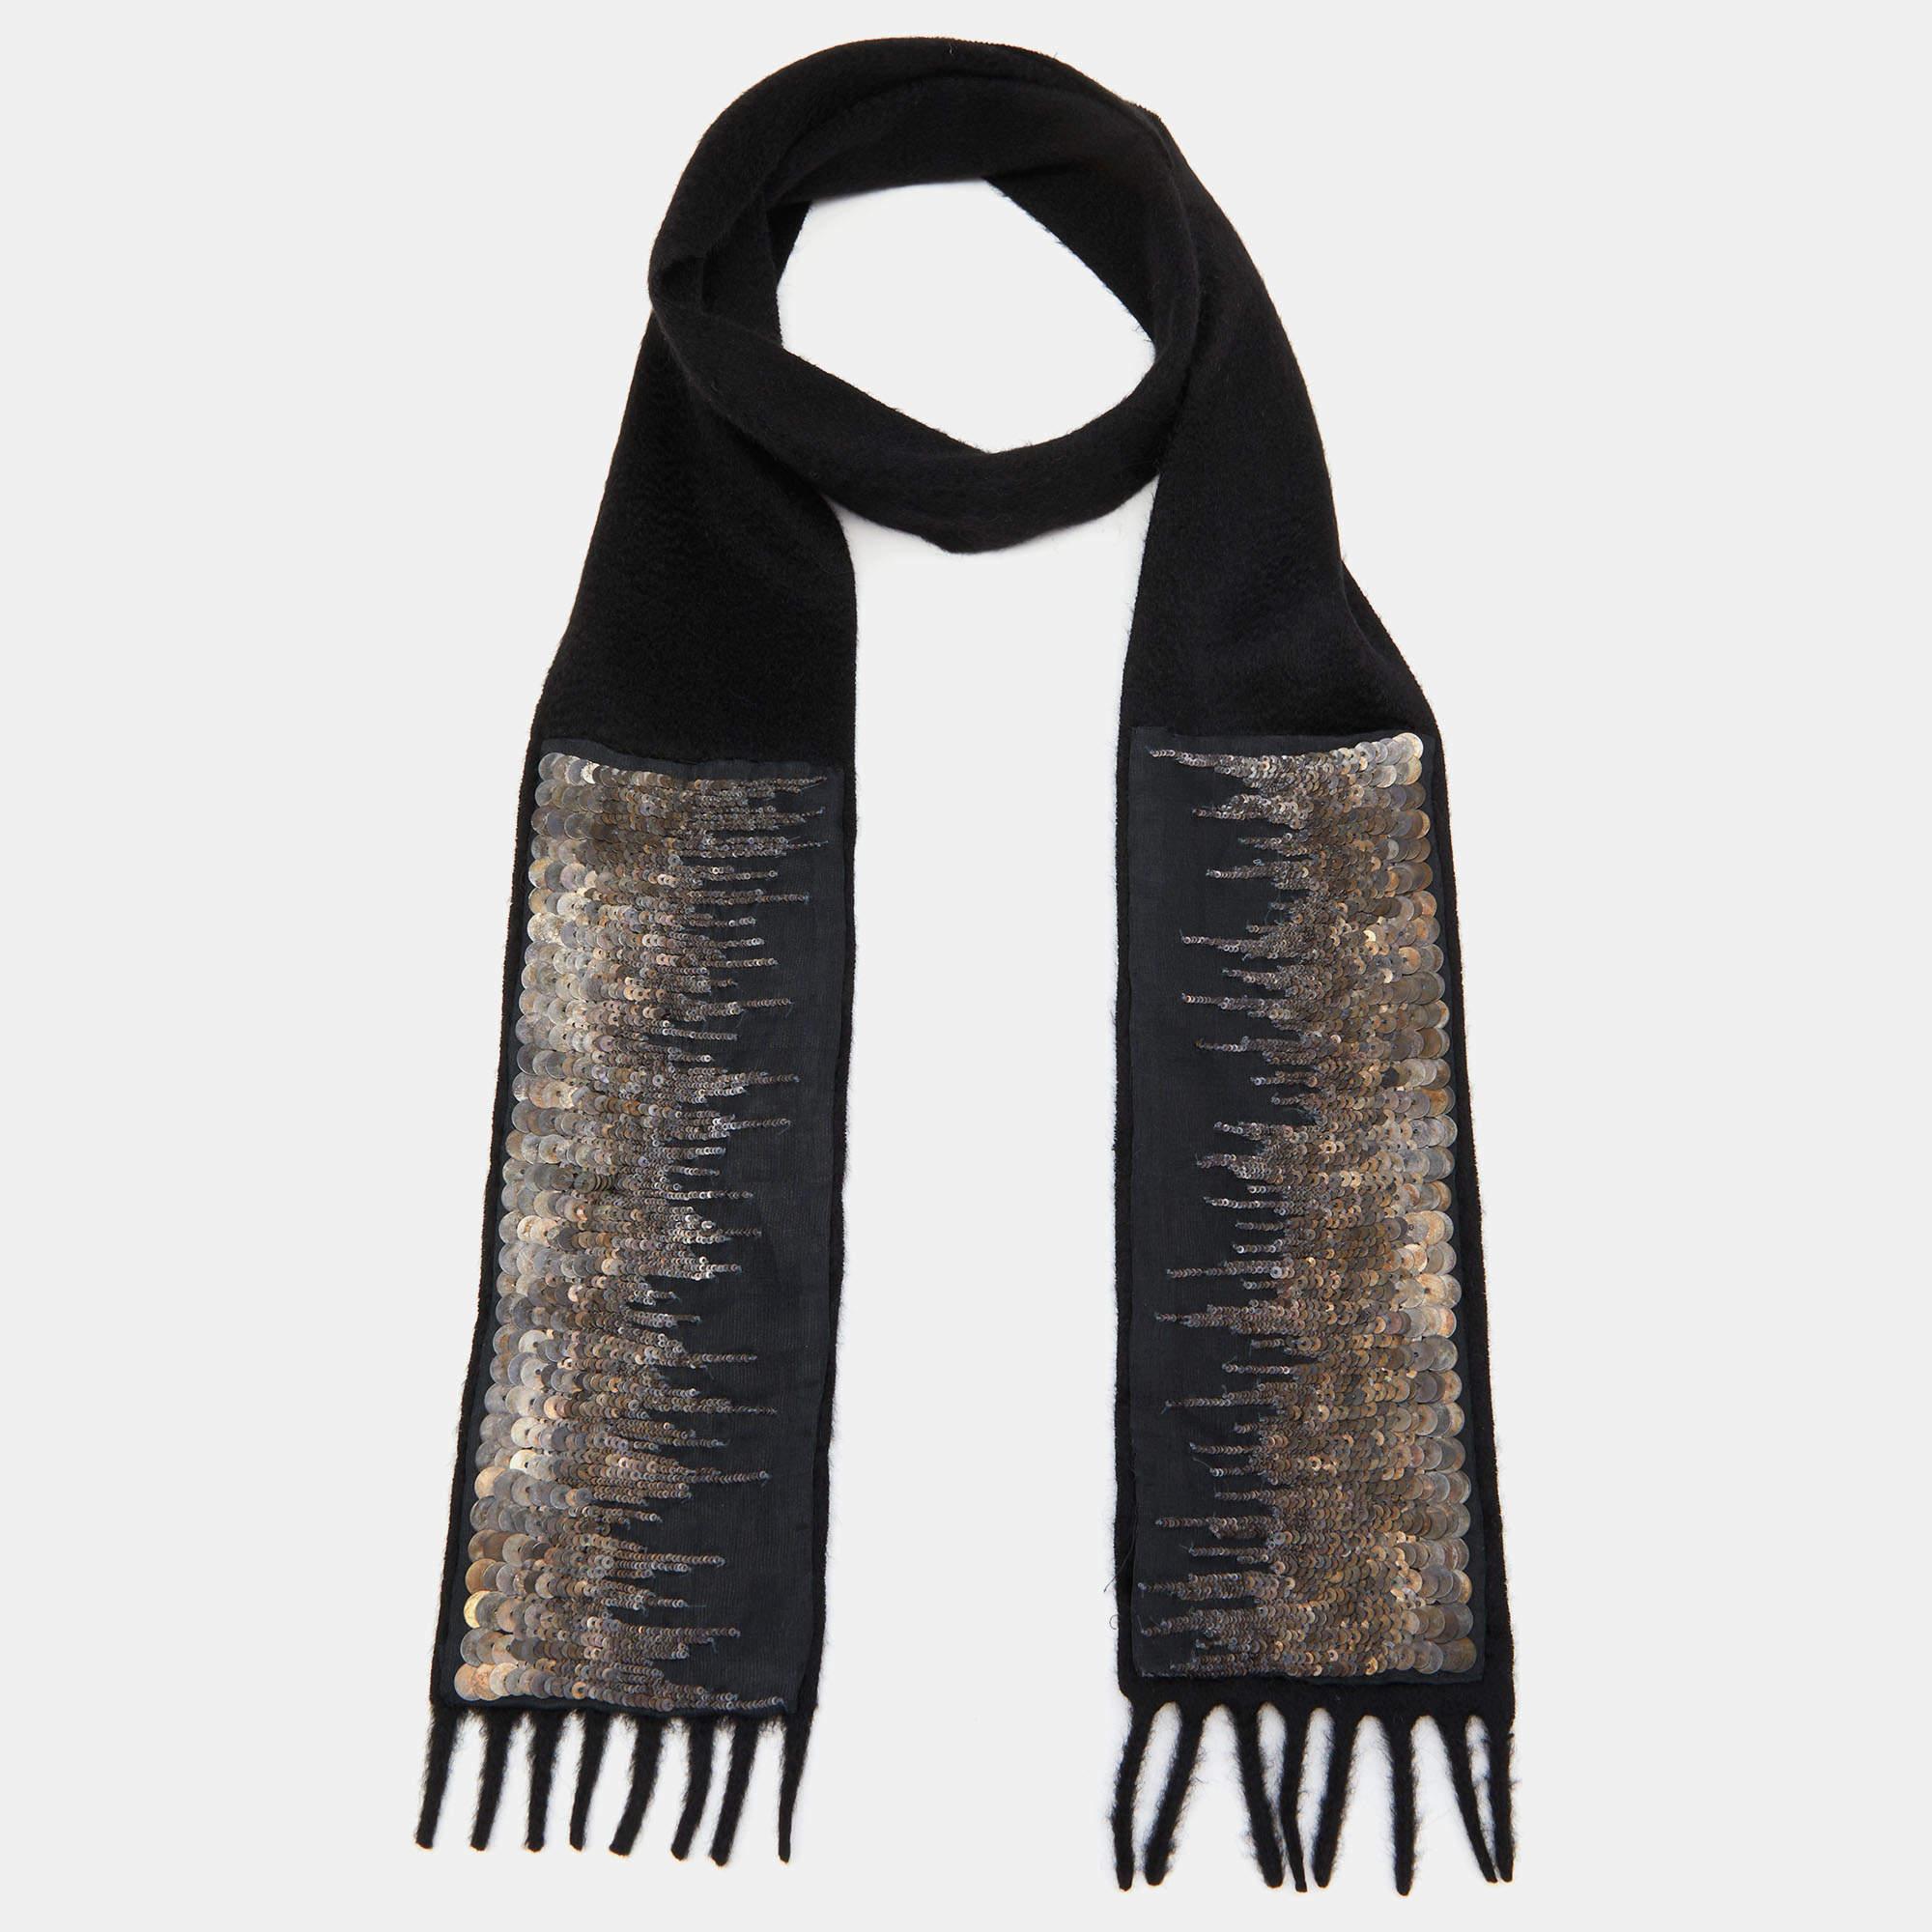 Prada a conçu cette écharpe avec des détails complexes sur du cachemire. Il est orné de paillettes et de franges. Portez-le autour du cou.

Comprend : Étiquette de prix
